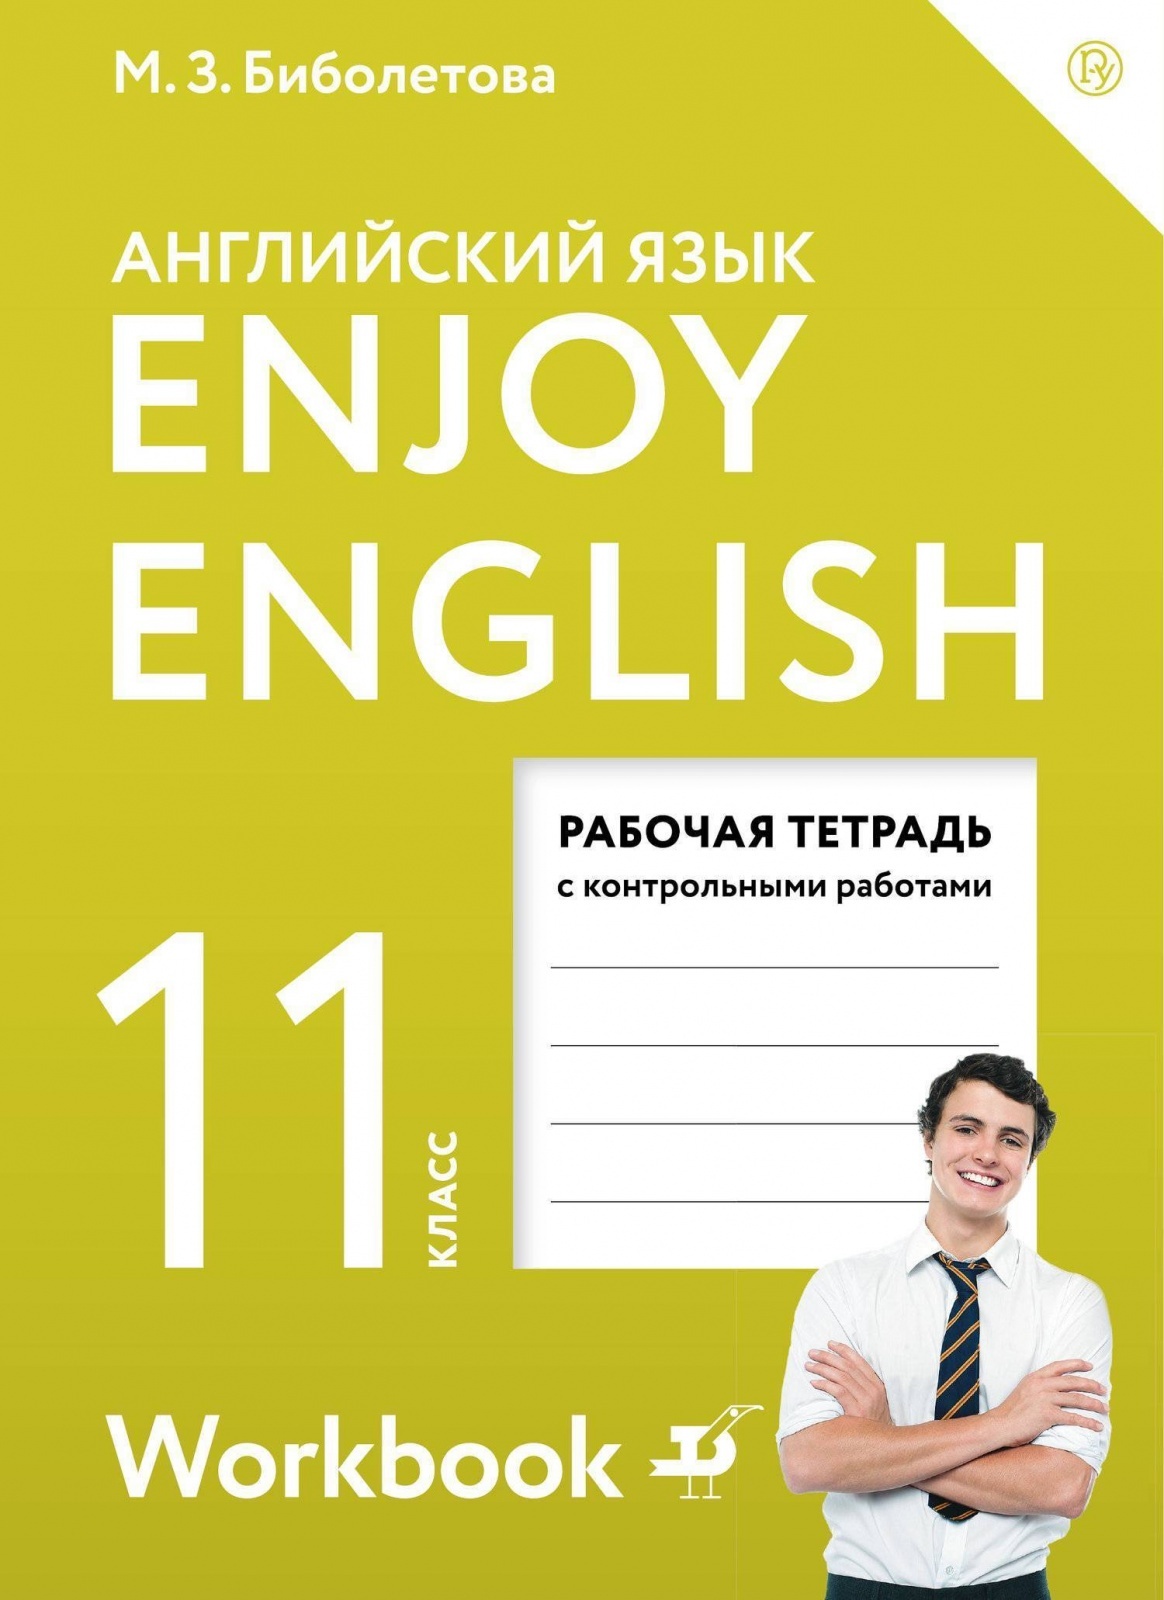 Английский 11 класс spotlight 2020. Enjoy English 11 класс. Английский язык enjoy English. Enjoy English 11 класс рабочая тетрадь. Английский язык 11 класс рабочая тетрадь.